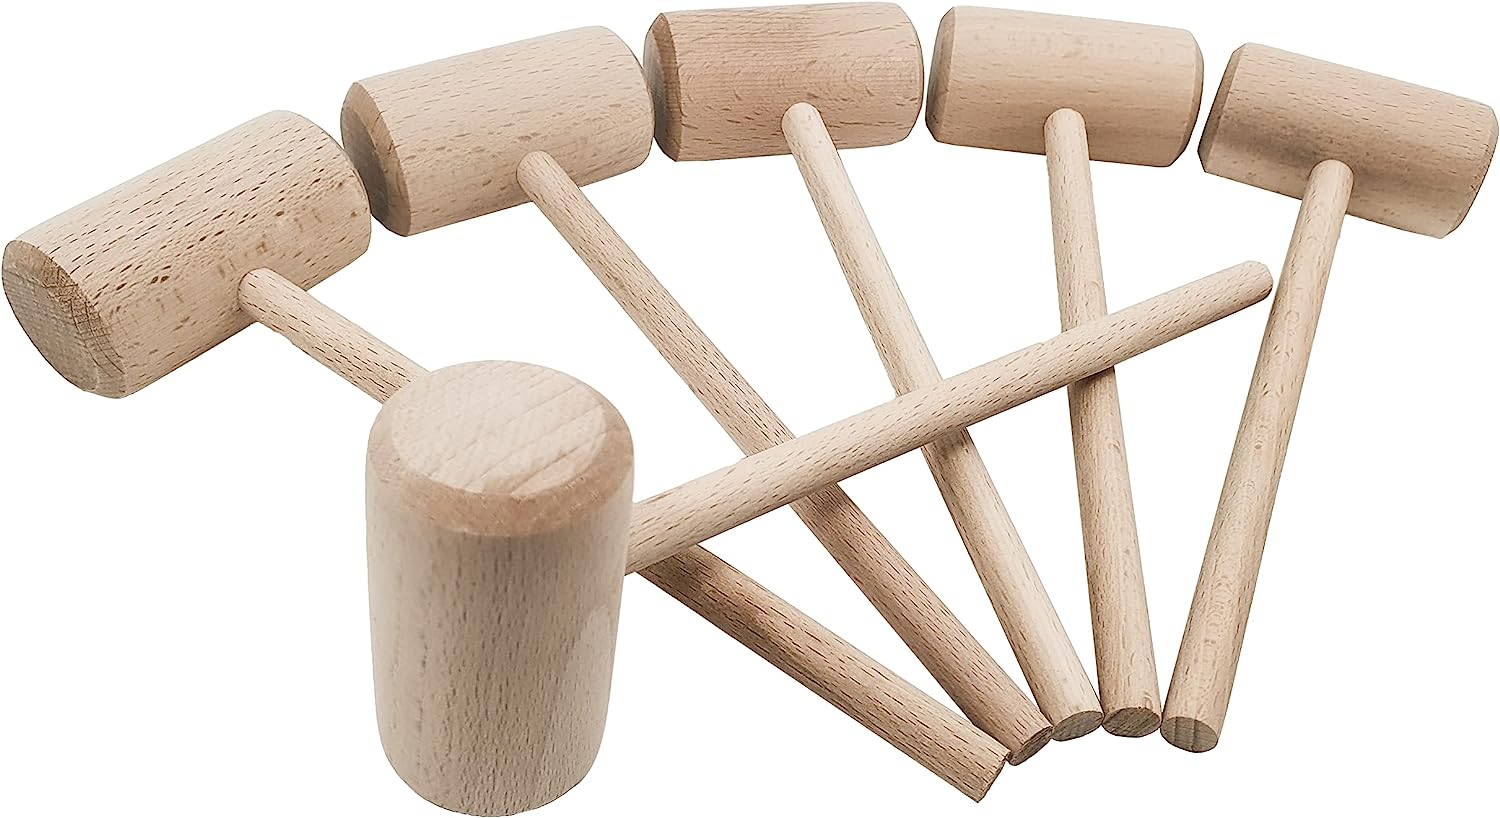 KAKURI Wooden Mallet for Woodworking 42mm Oak, Japanese Wood Mallet Hammer for Chiseling, Adjusting Japanese Plane, Assembling Furniture, Made in